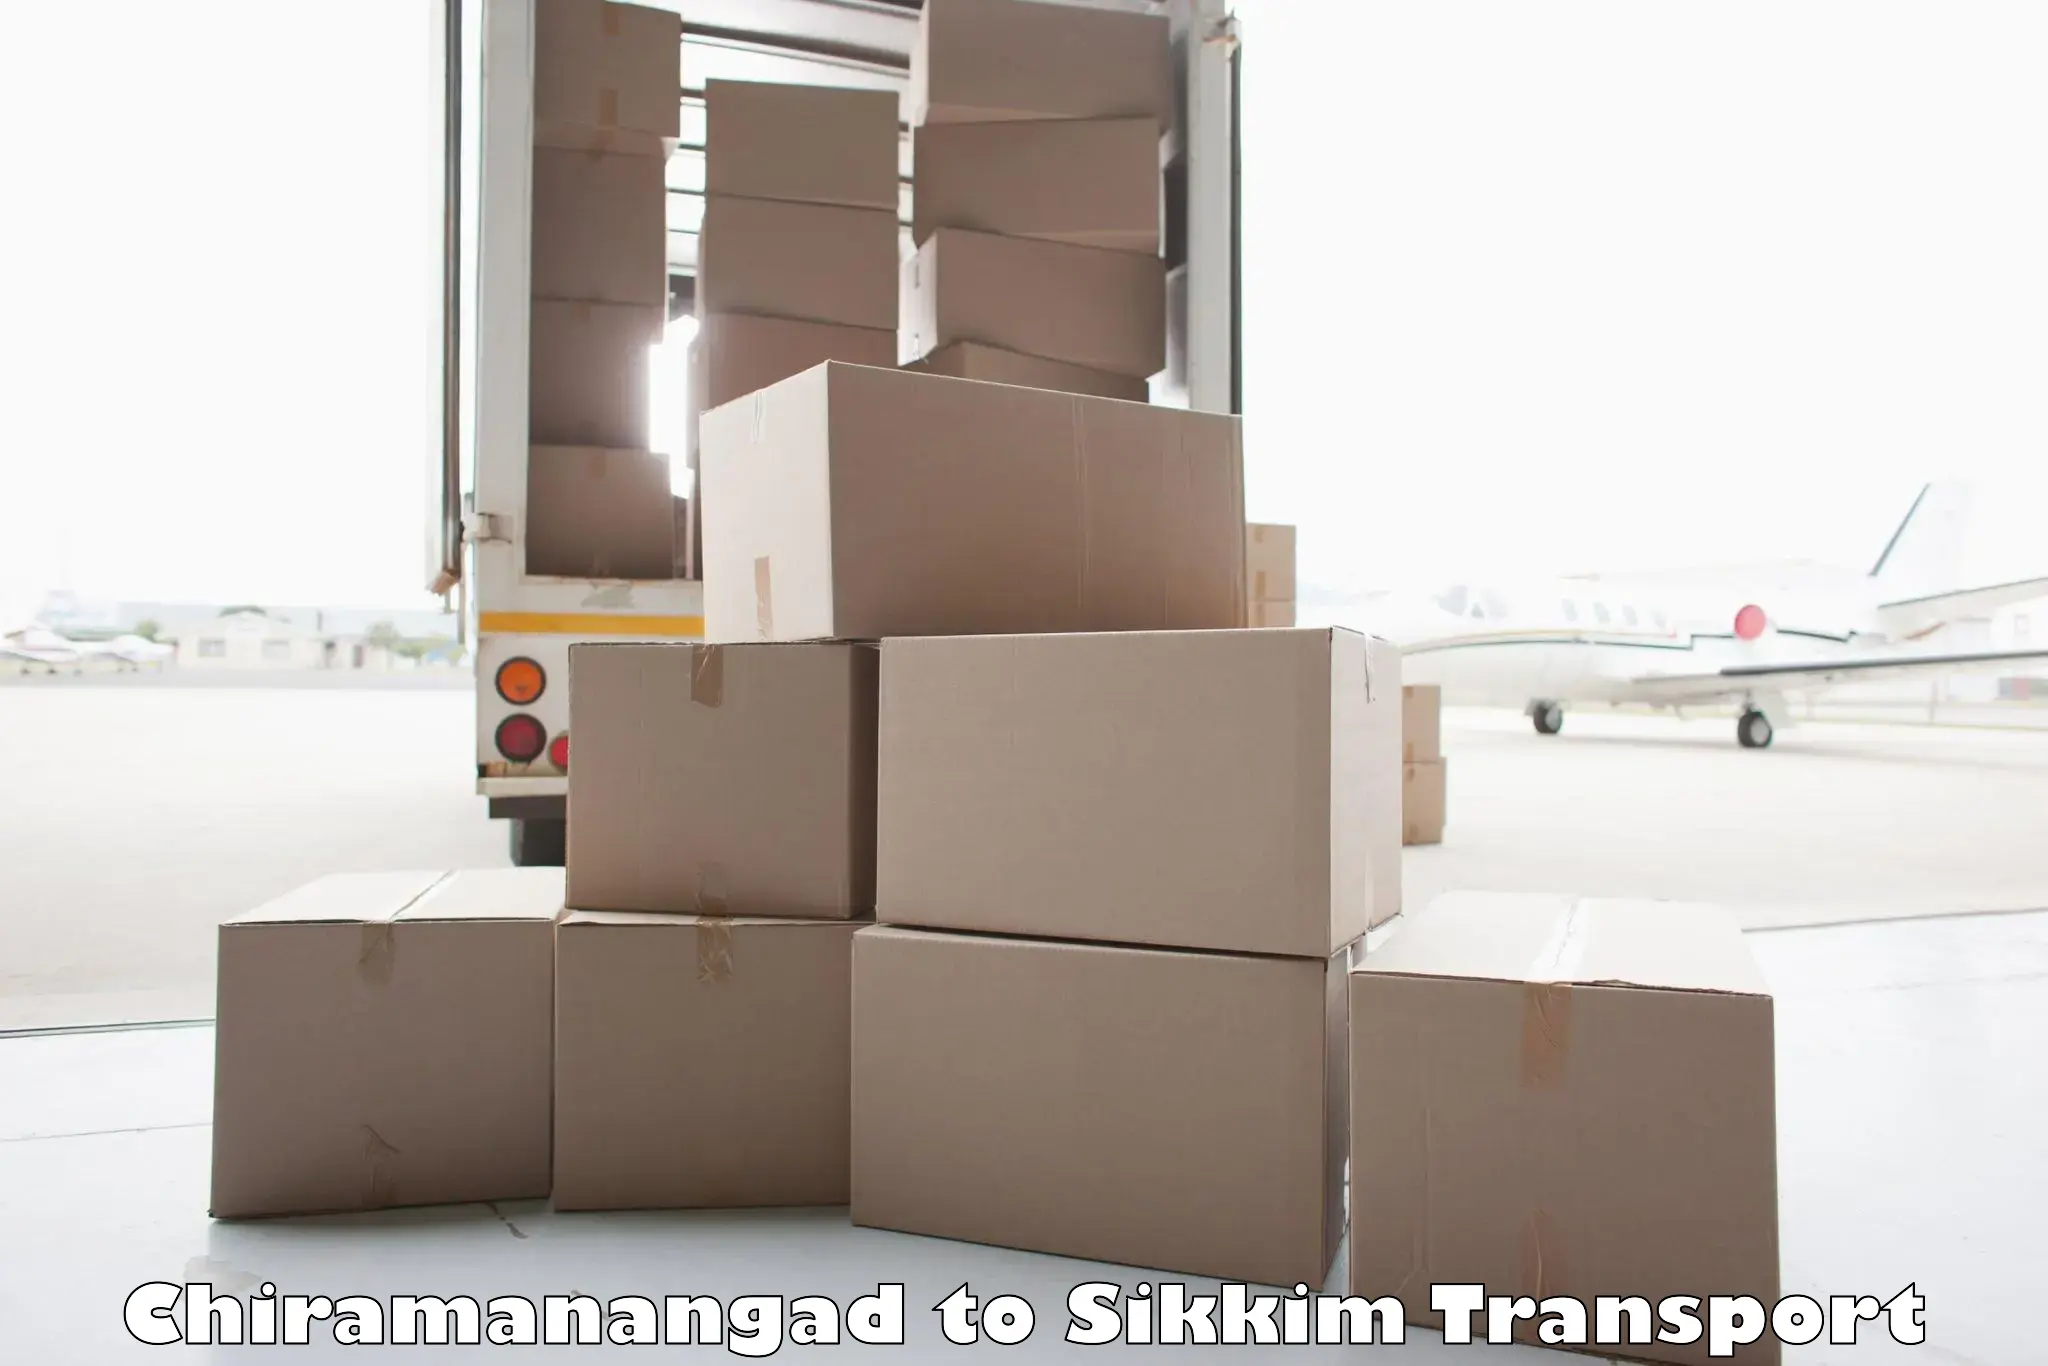 Interstate goods transport Chiramanangad to Sikkim